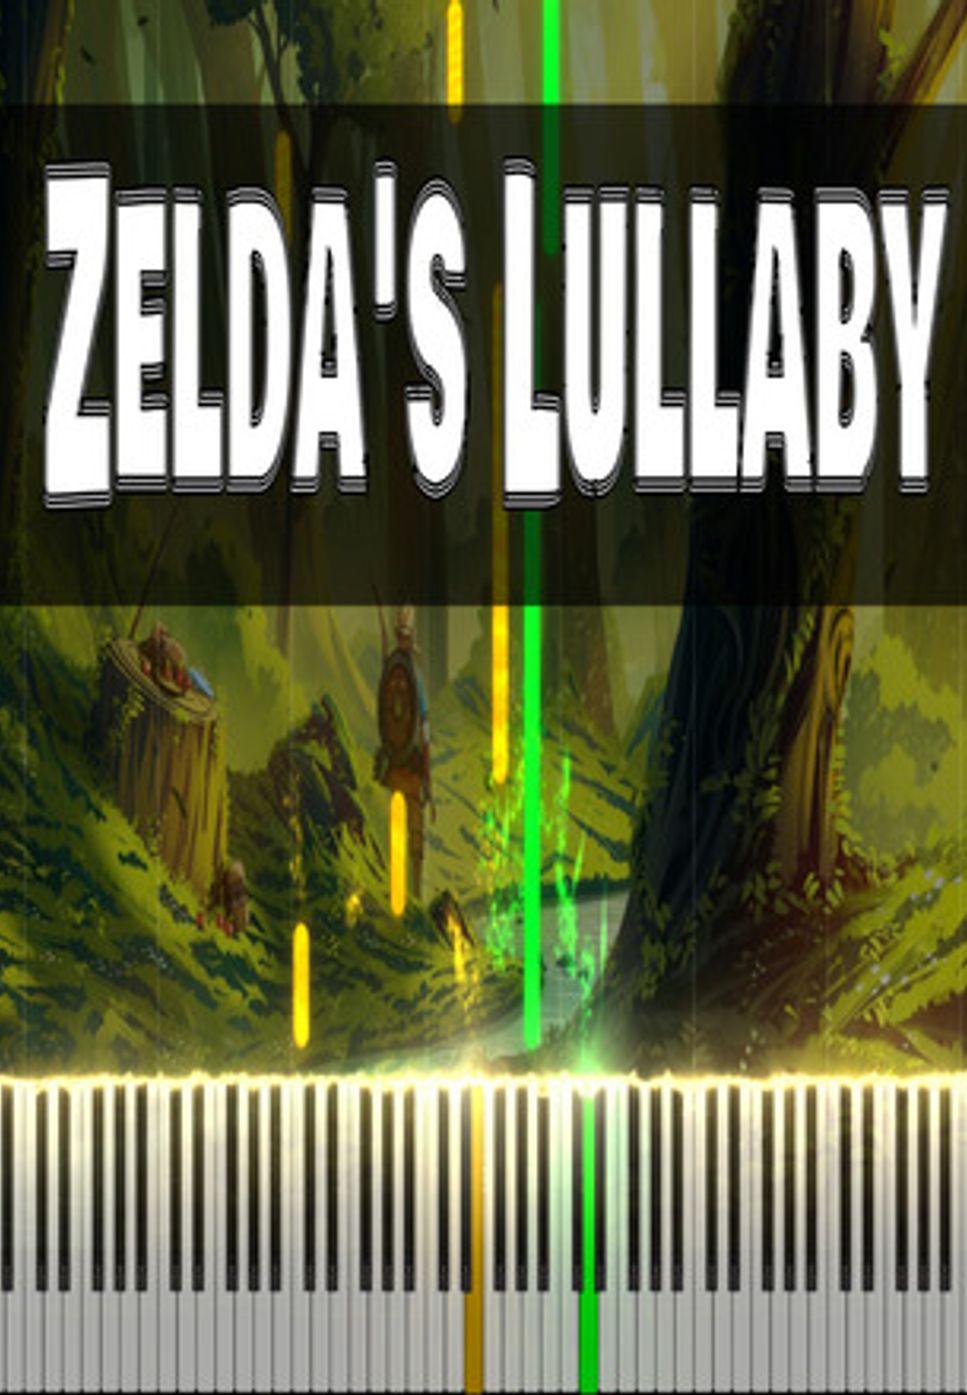 Koji Kondo - Zelda's Lullaby by Vincent Payet